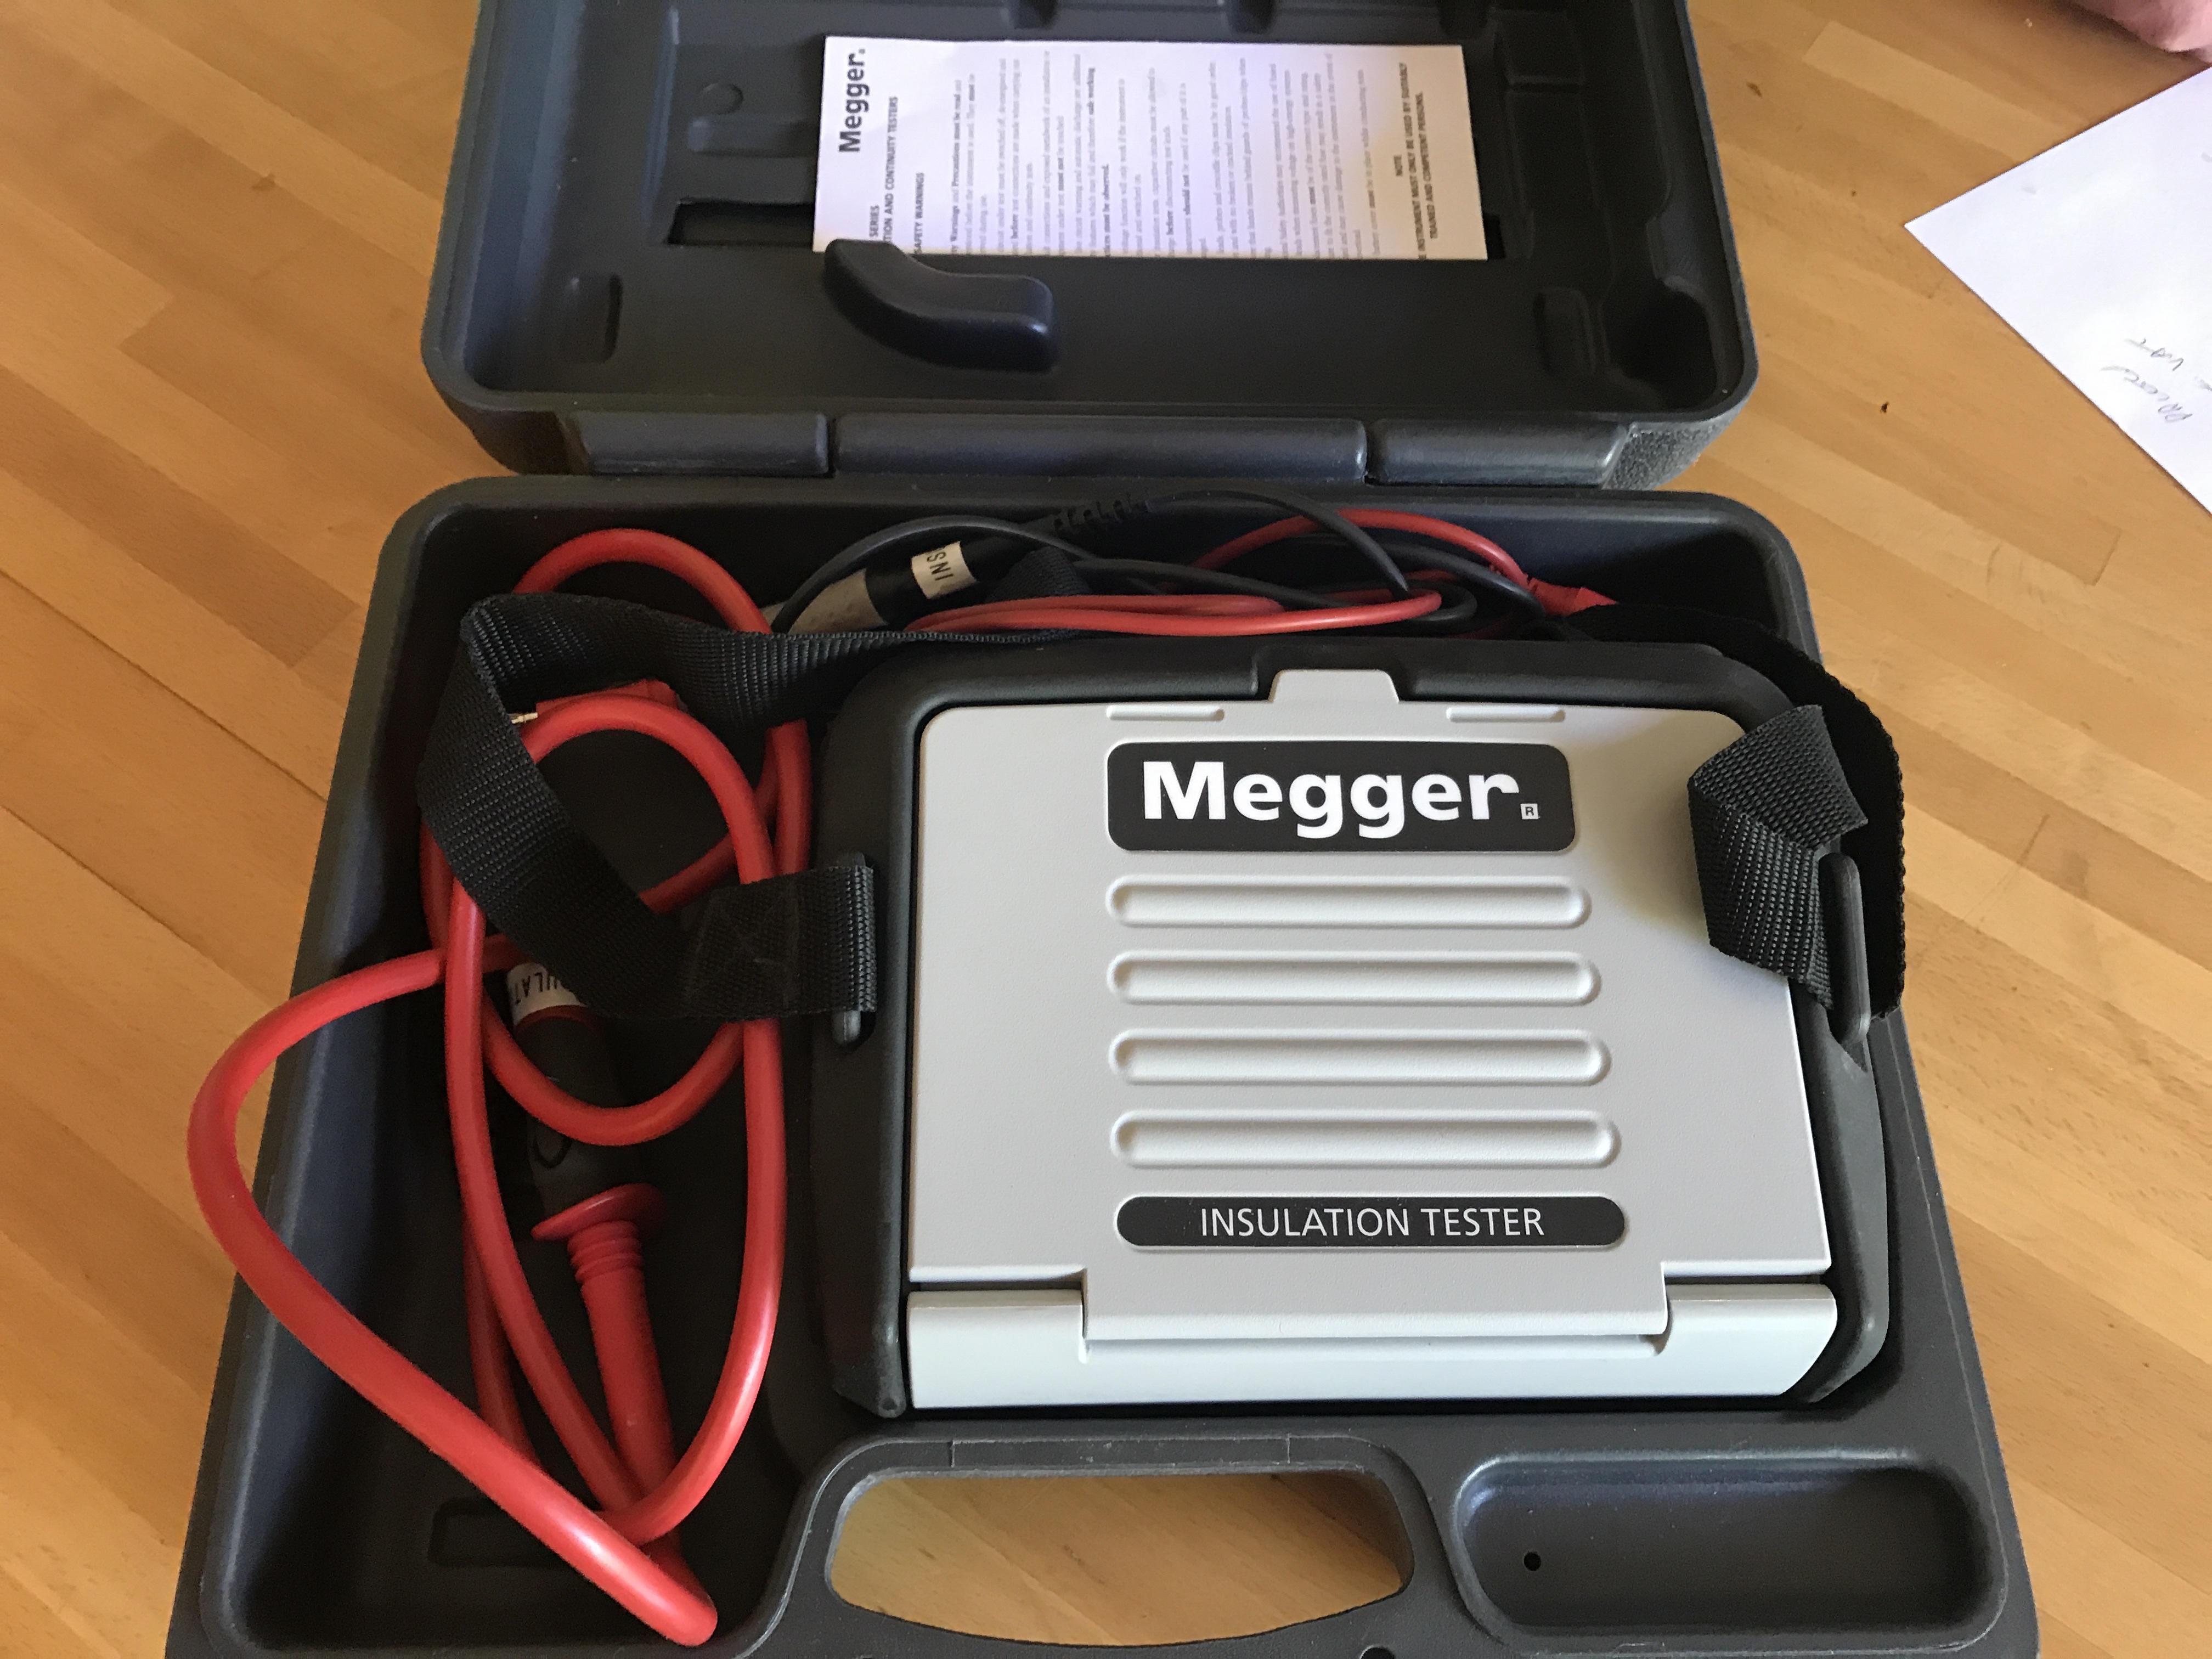 For Sale - Megger MIT 320 Ins & Cont Tester fullsizeoutput_dc6 - EletriciansForums.net